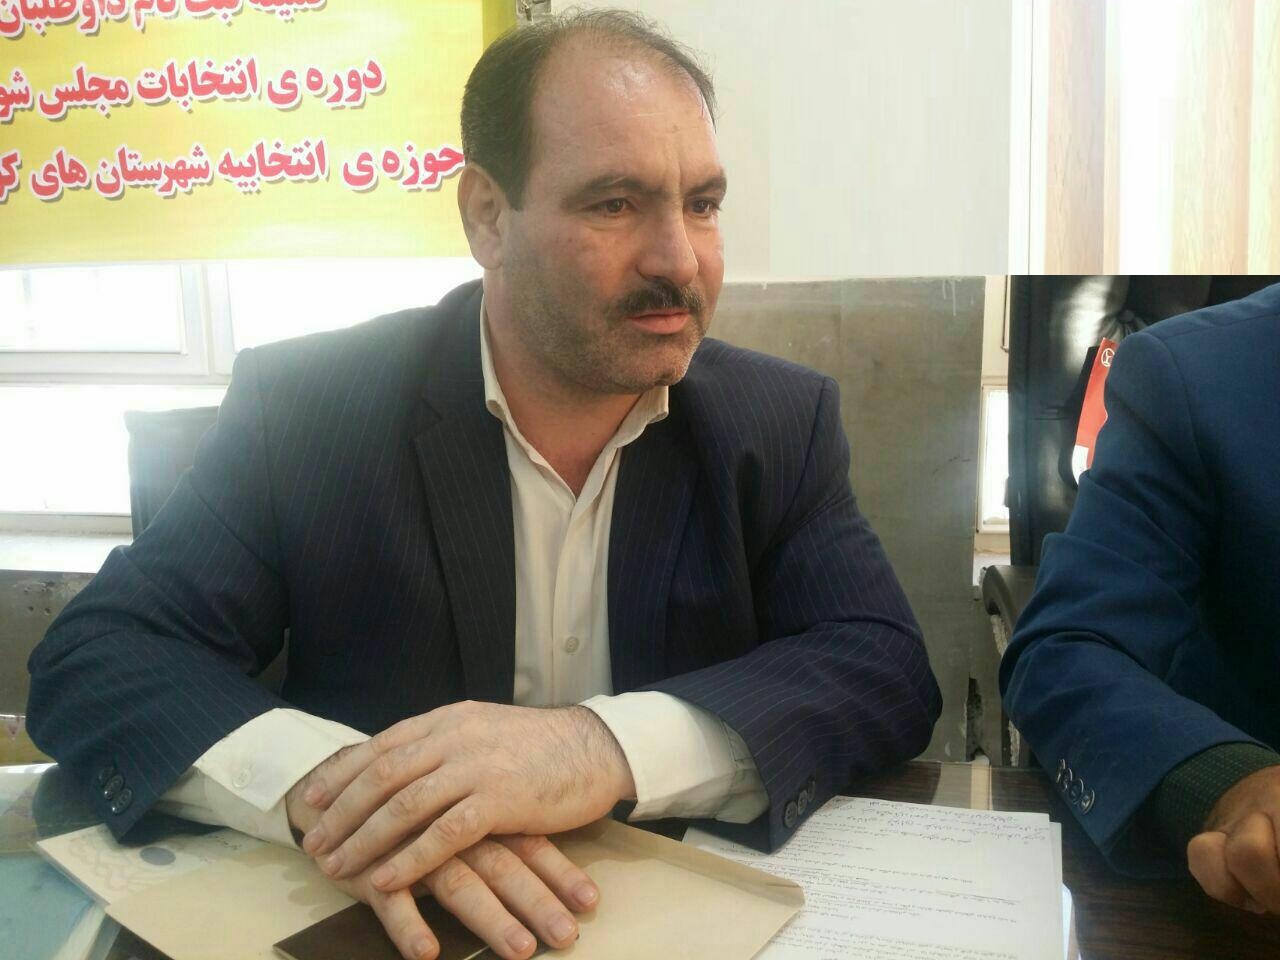 اولین ثبت نام انتخابات  مجلس در حوزه انتخابیه کوهدشت و رومشکان با کیومرث  حسن پور شروع شد